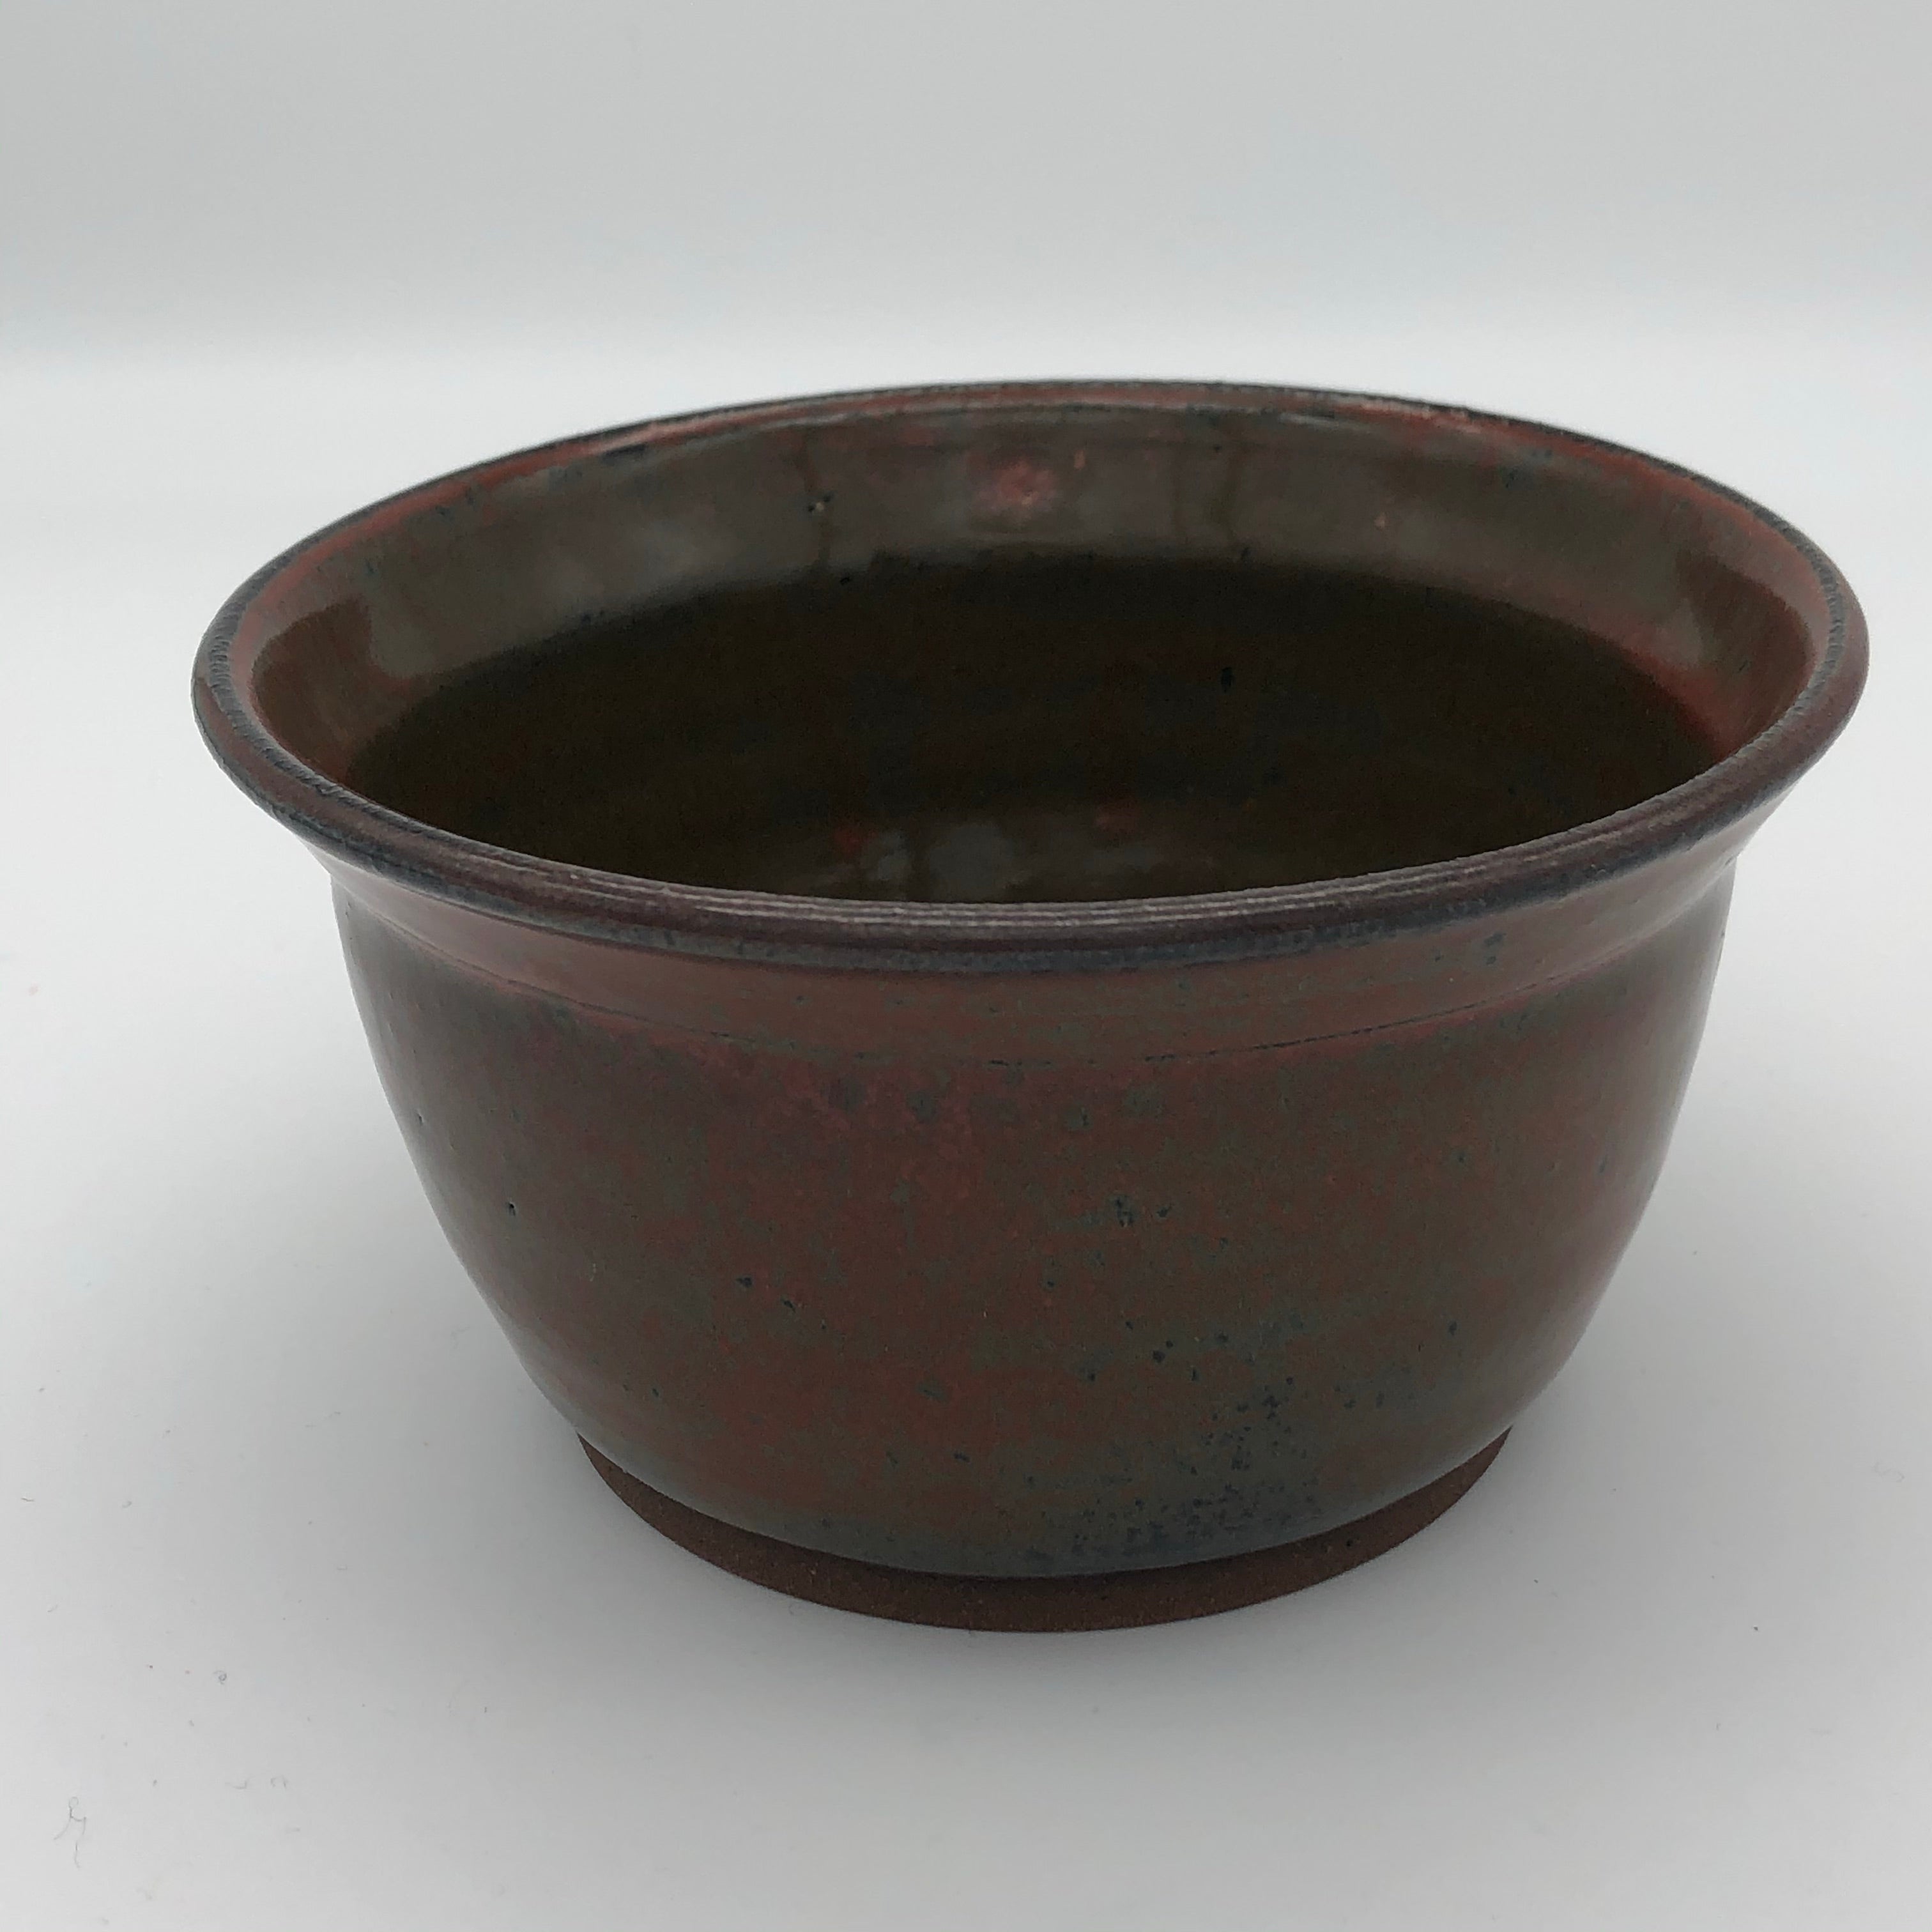 Small bowl in Ancient Jasper